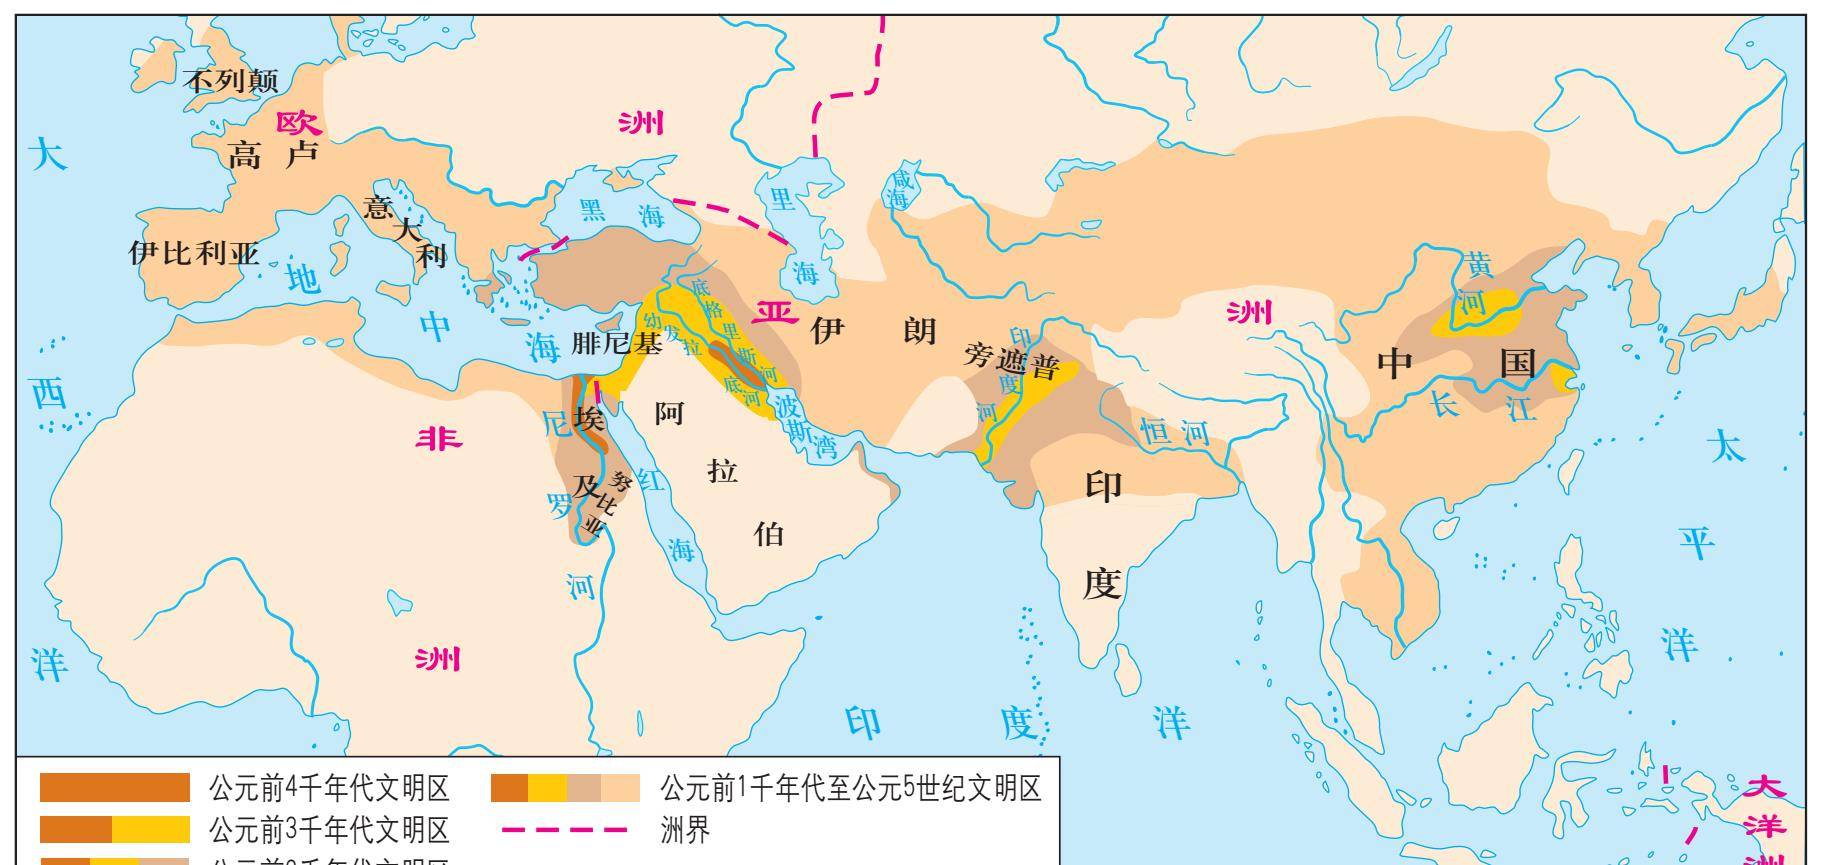 四大文明古国中,为什么古埃及文明能比中国文明早三千多年?